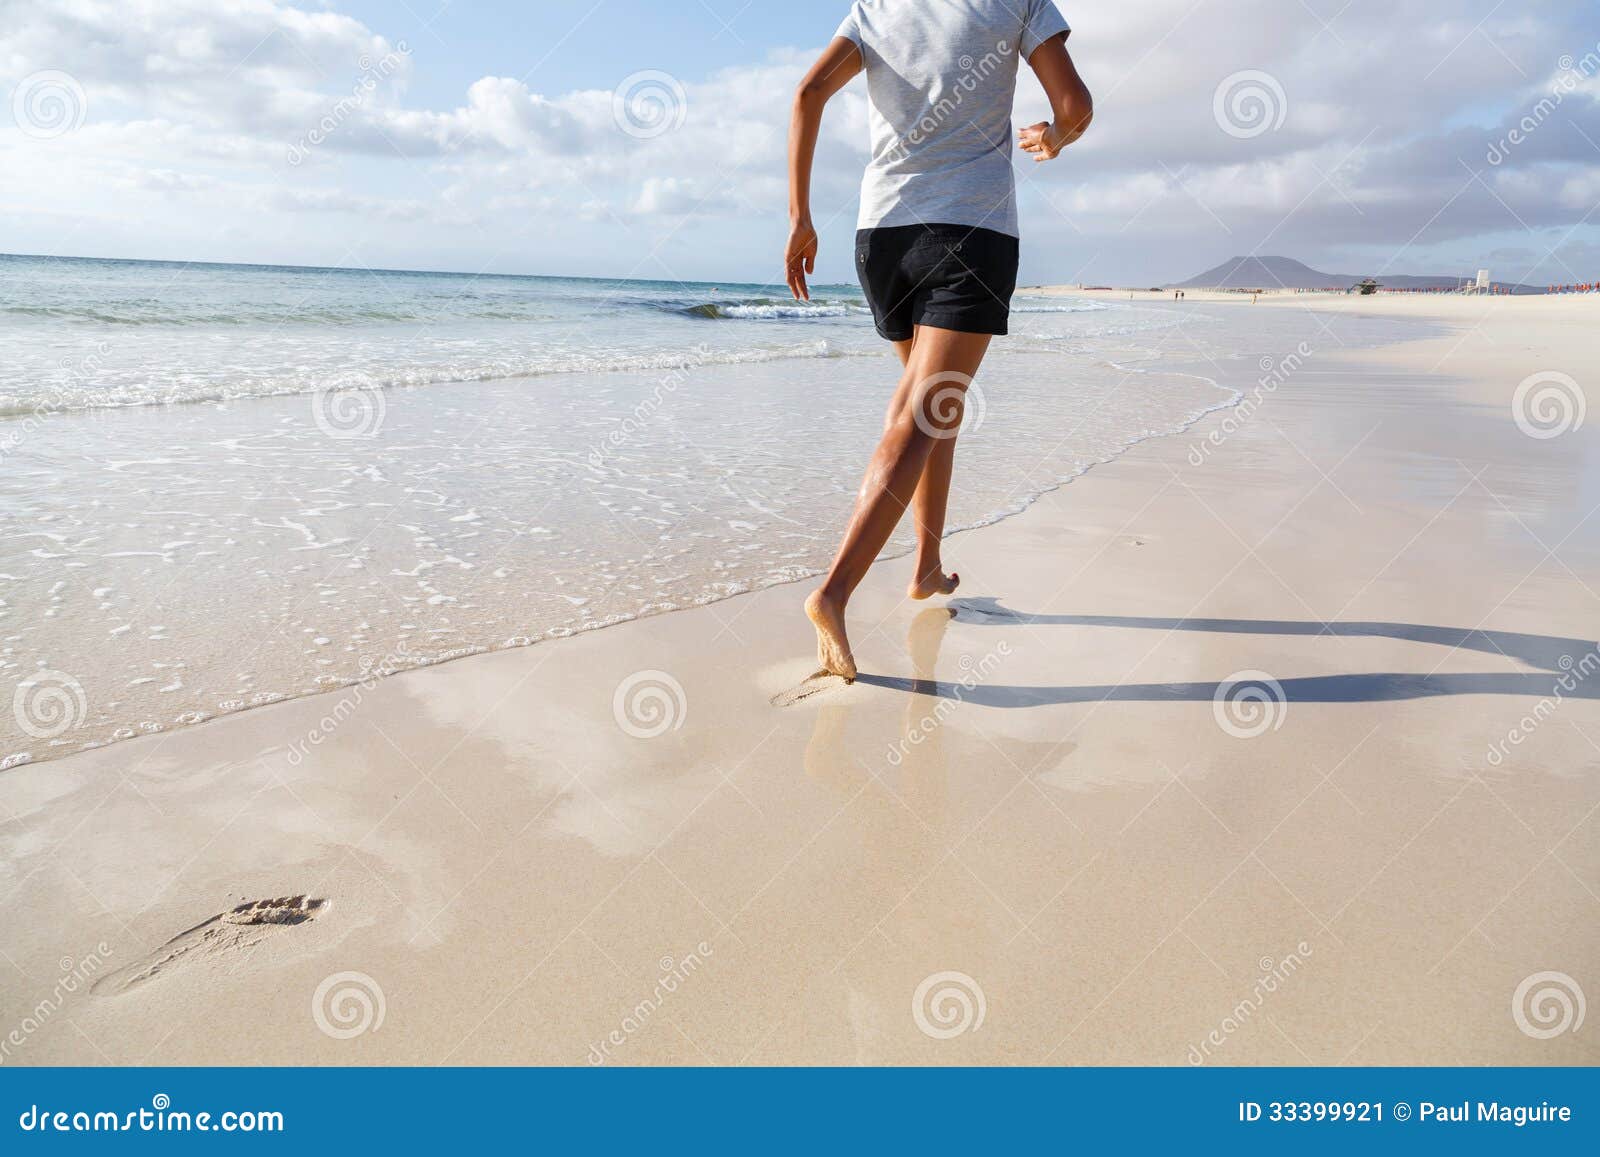 女人在沙滩上跑的图片